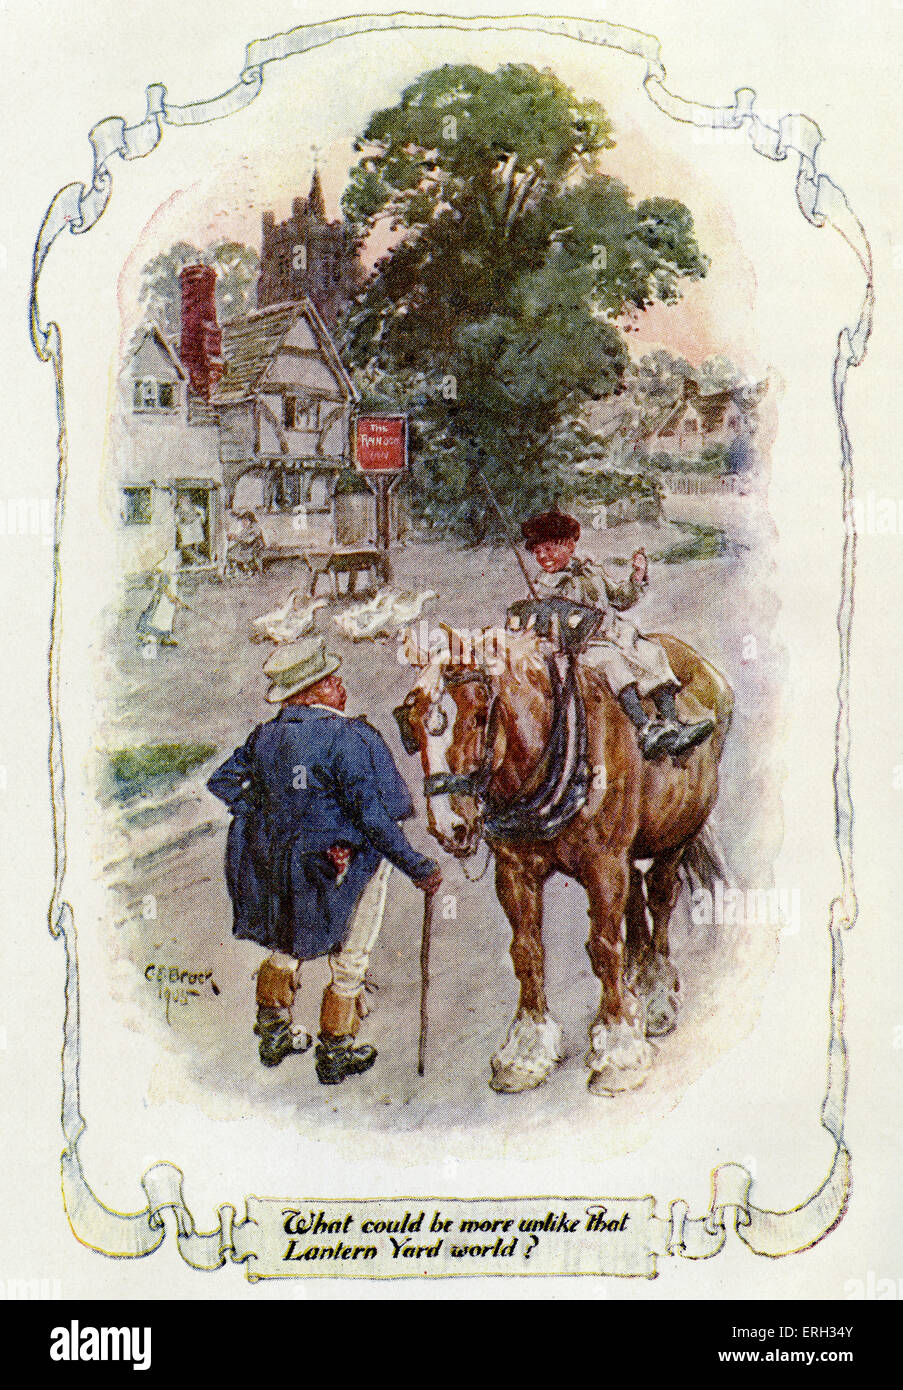 Silas Marner ; le tisserand de Raveloe par George Eliot (nom de plume de Mary Ann Evans) publié en 1861. Illustration by CE Brock Banque D'Images